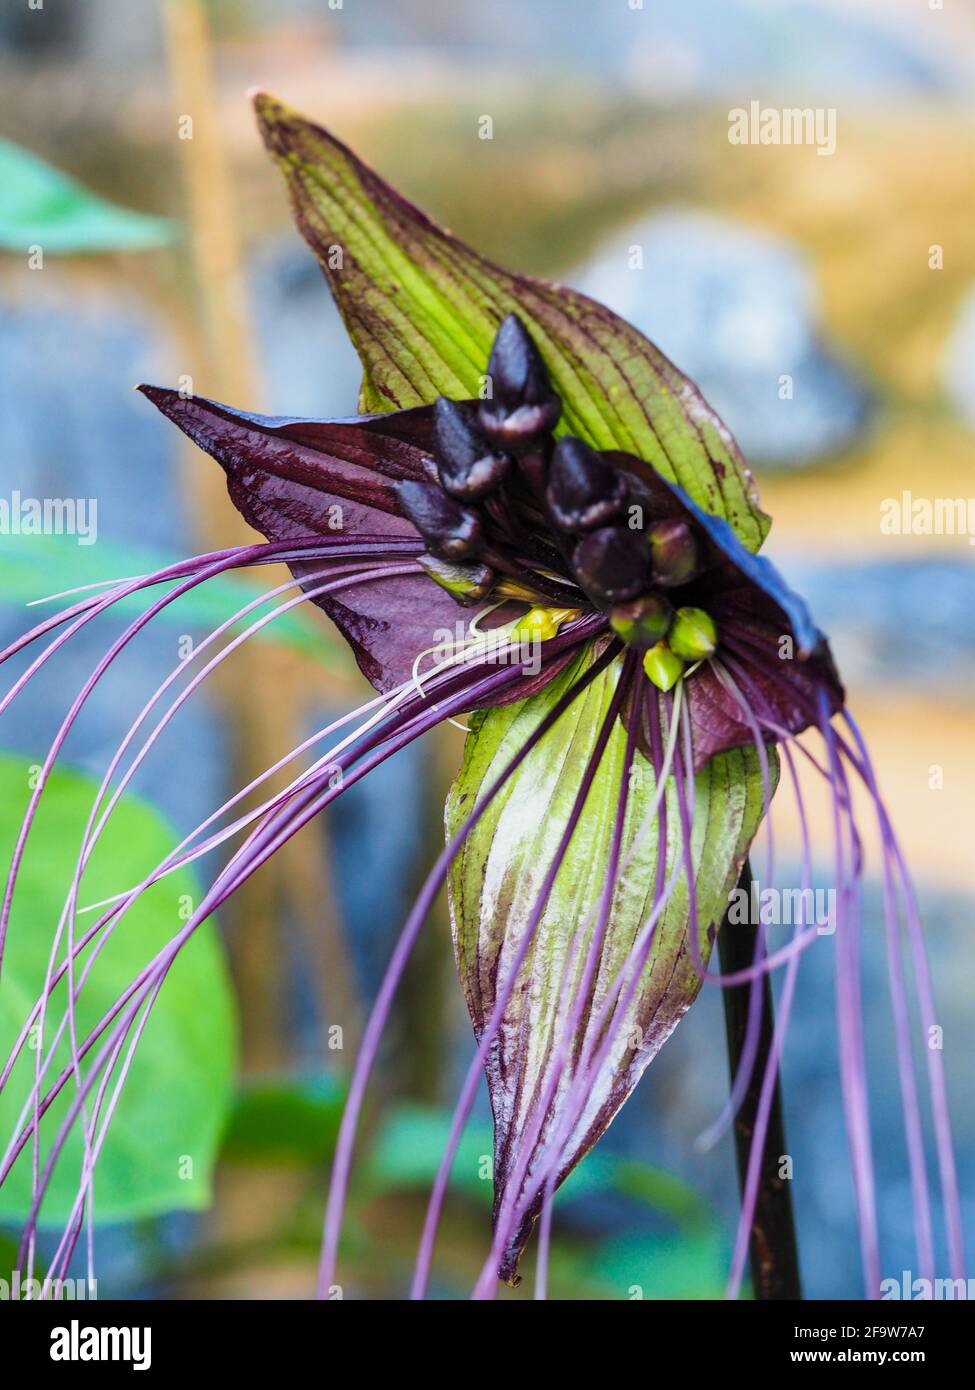 La extraña, extraña y extrañamente hermosa planta de flores de murciélago o Tacca  Chantrieri, con dos brácteas que se asemejan a las alas de murciélago y  Bracteoles como un susurro Fotografía de